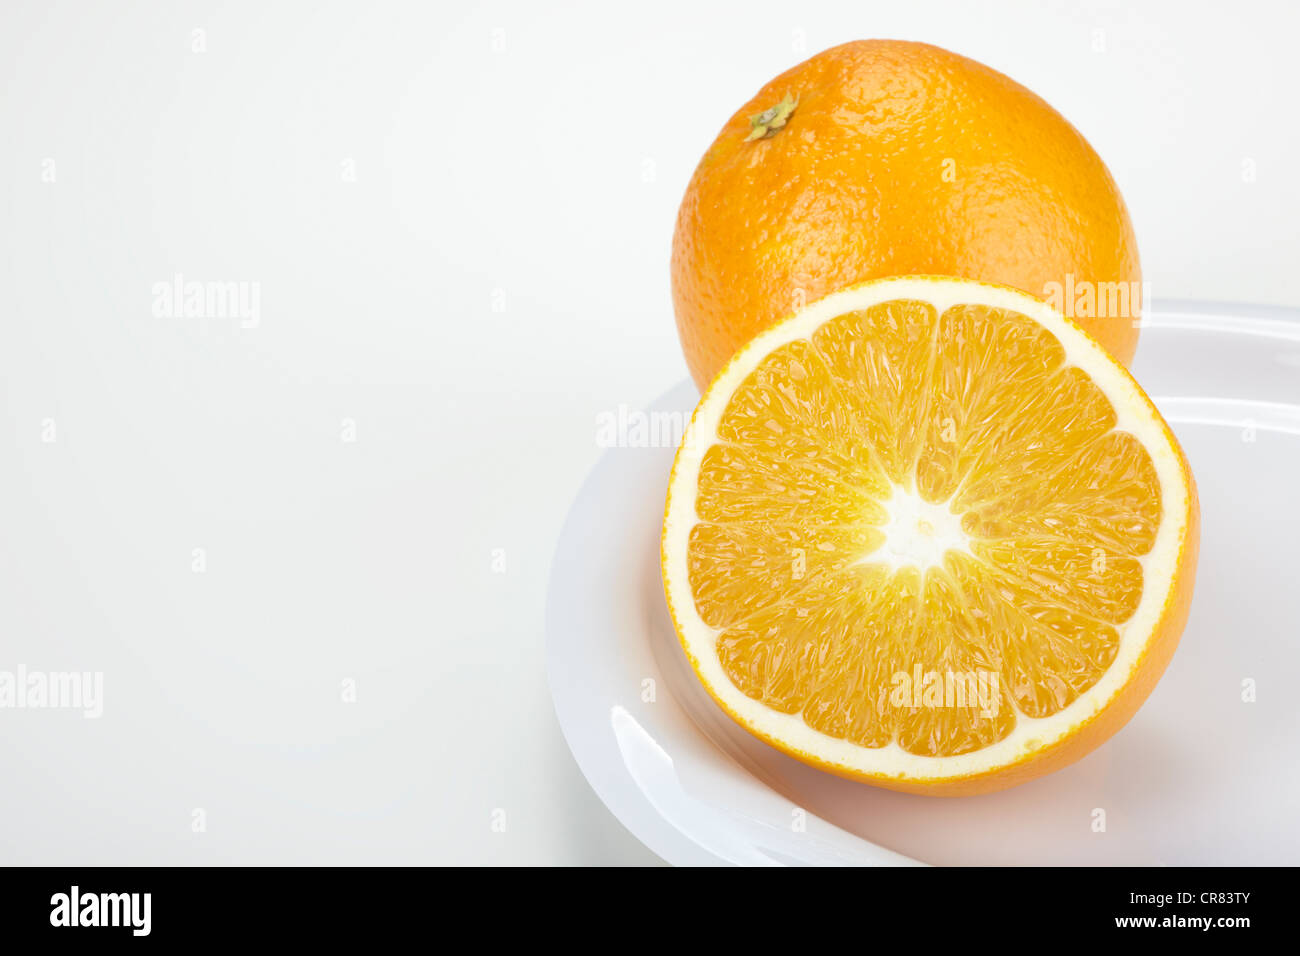 Zwei Orangen (Citrus Sinensis), eine ganze Frucht und einer halbierten Frucht, auf einem weißen Teller Stockfoto